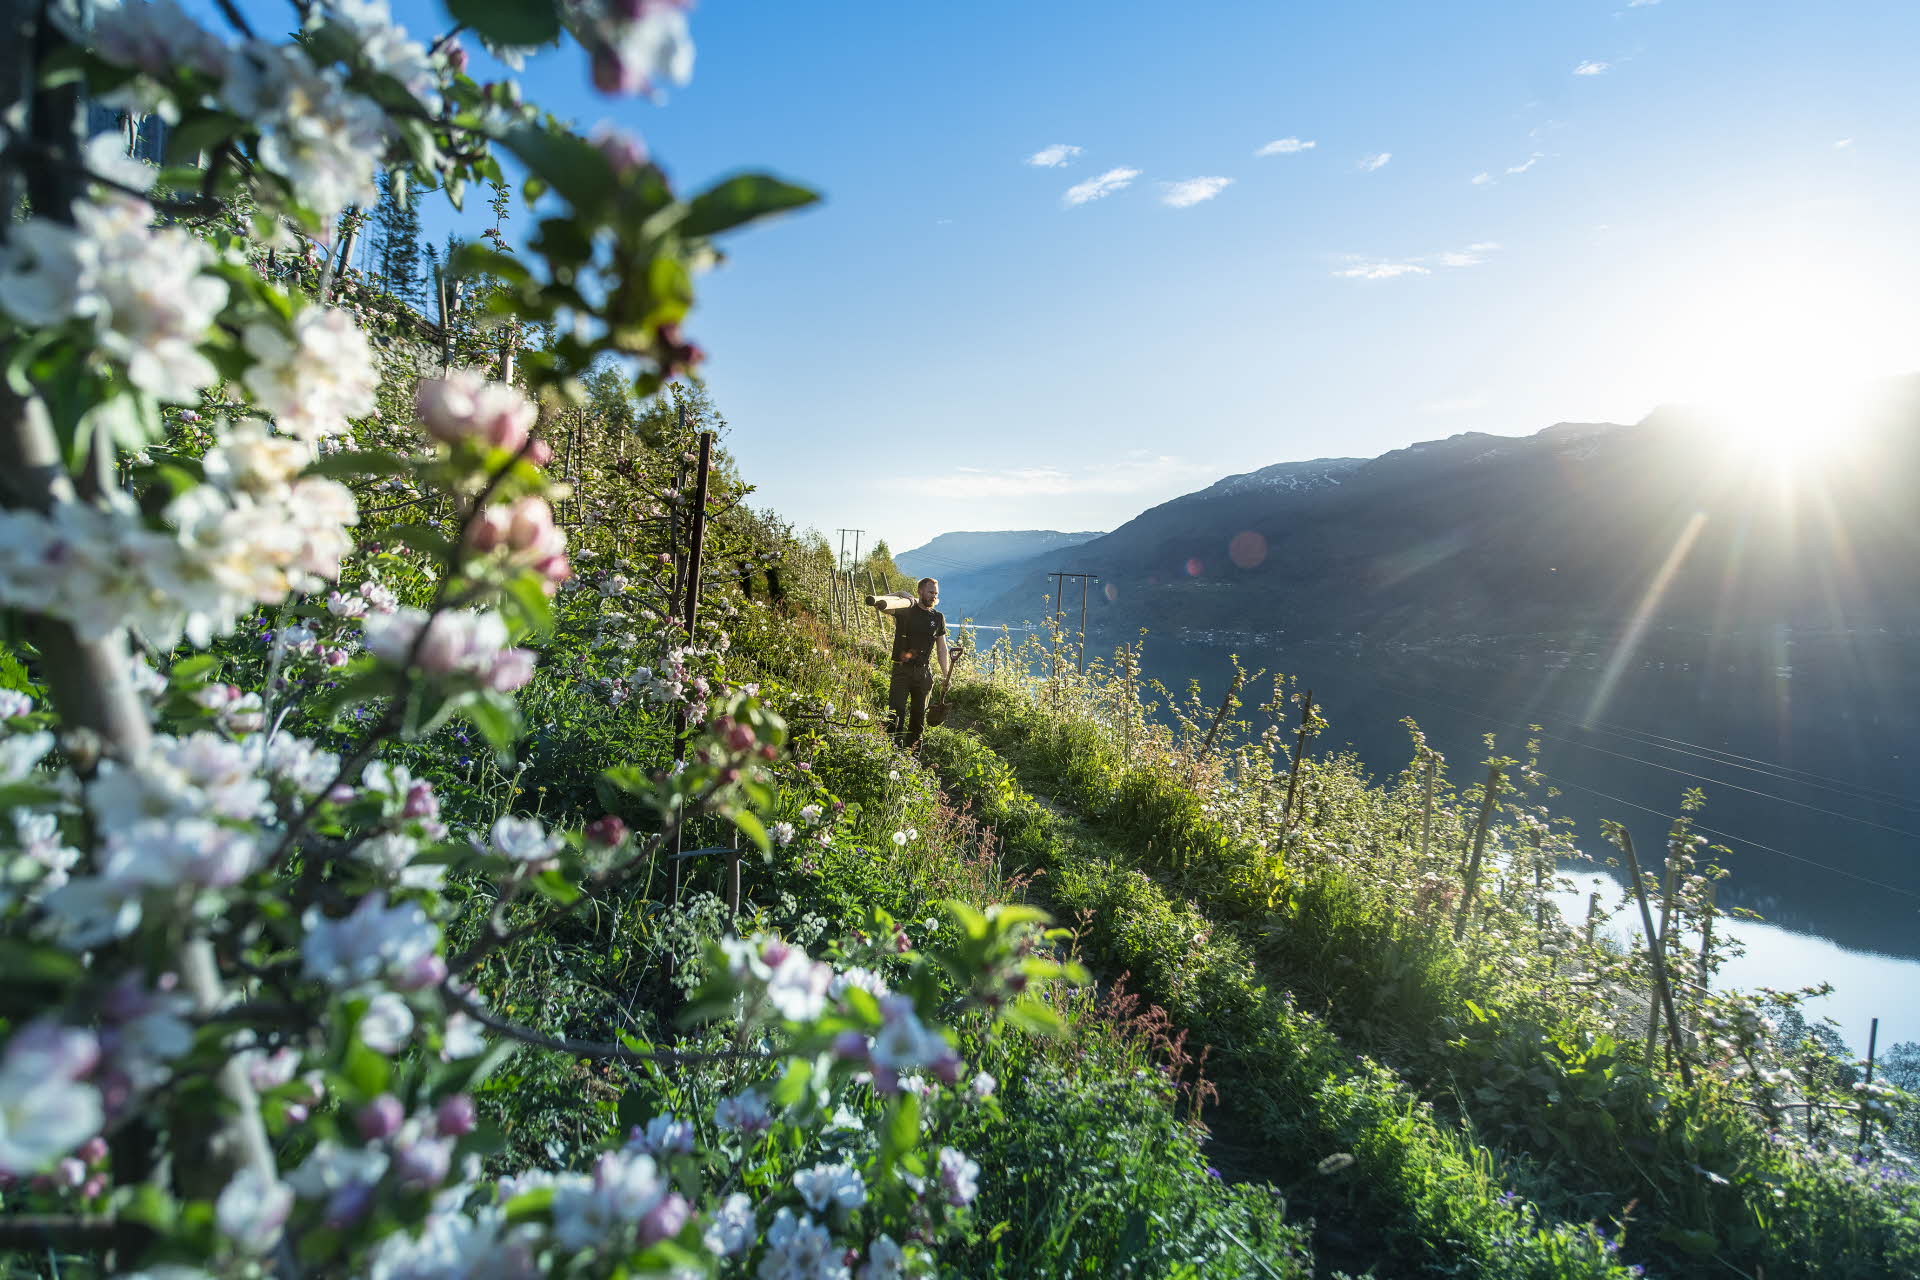 一名男子手里拿着一根木棍，走在哈丹格尔峡湾 (Hardangerfjord) 上方鲜花盛开的果树间的小路上